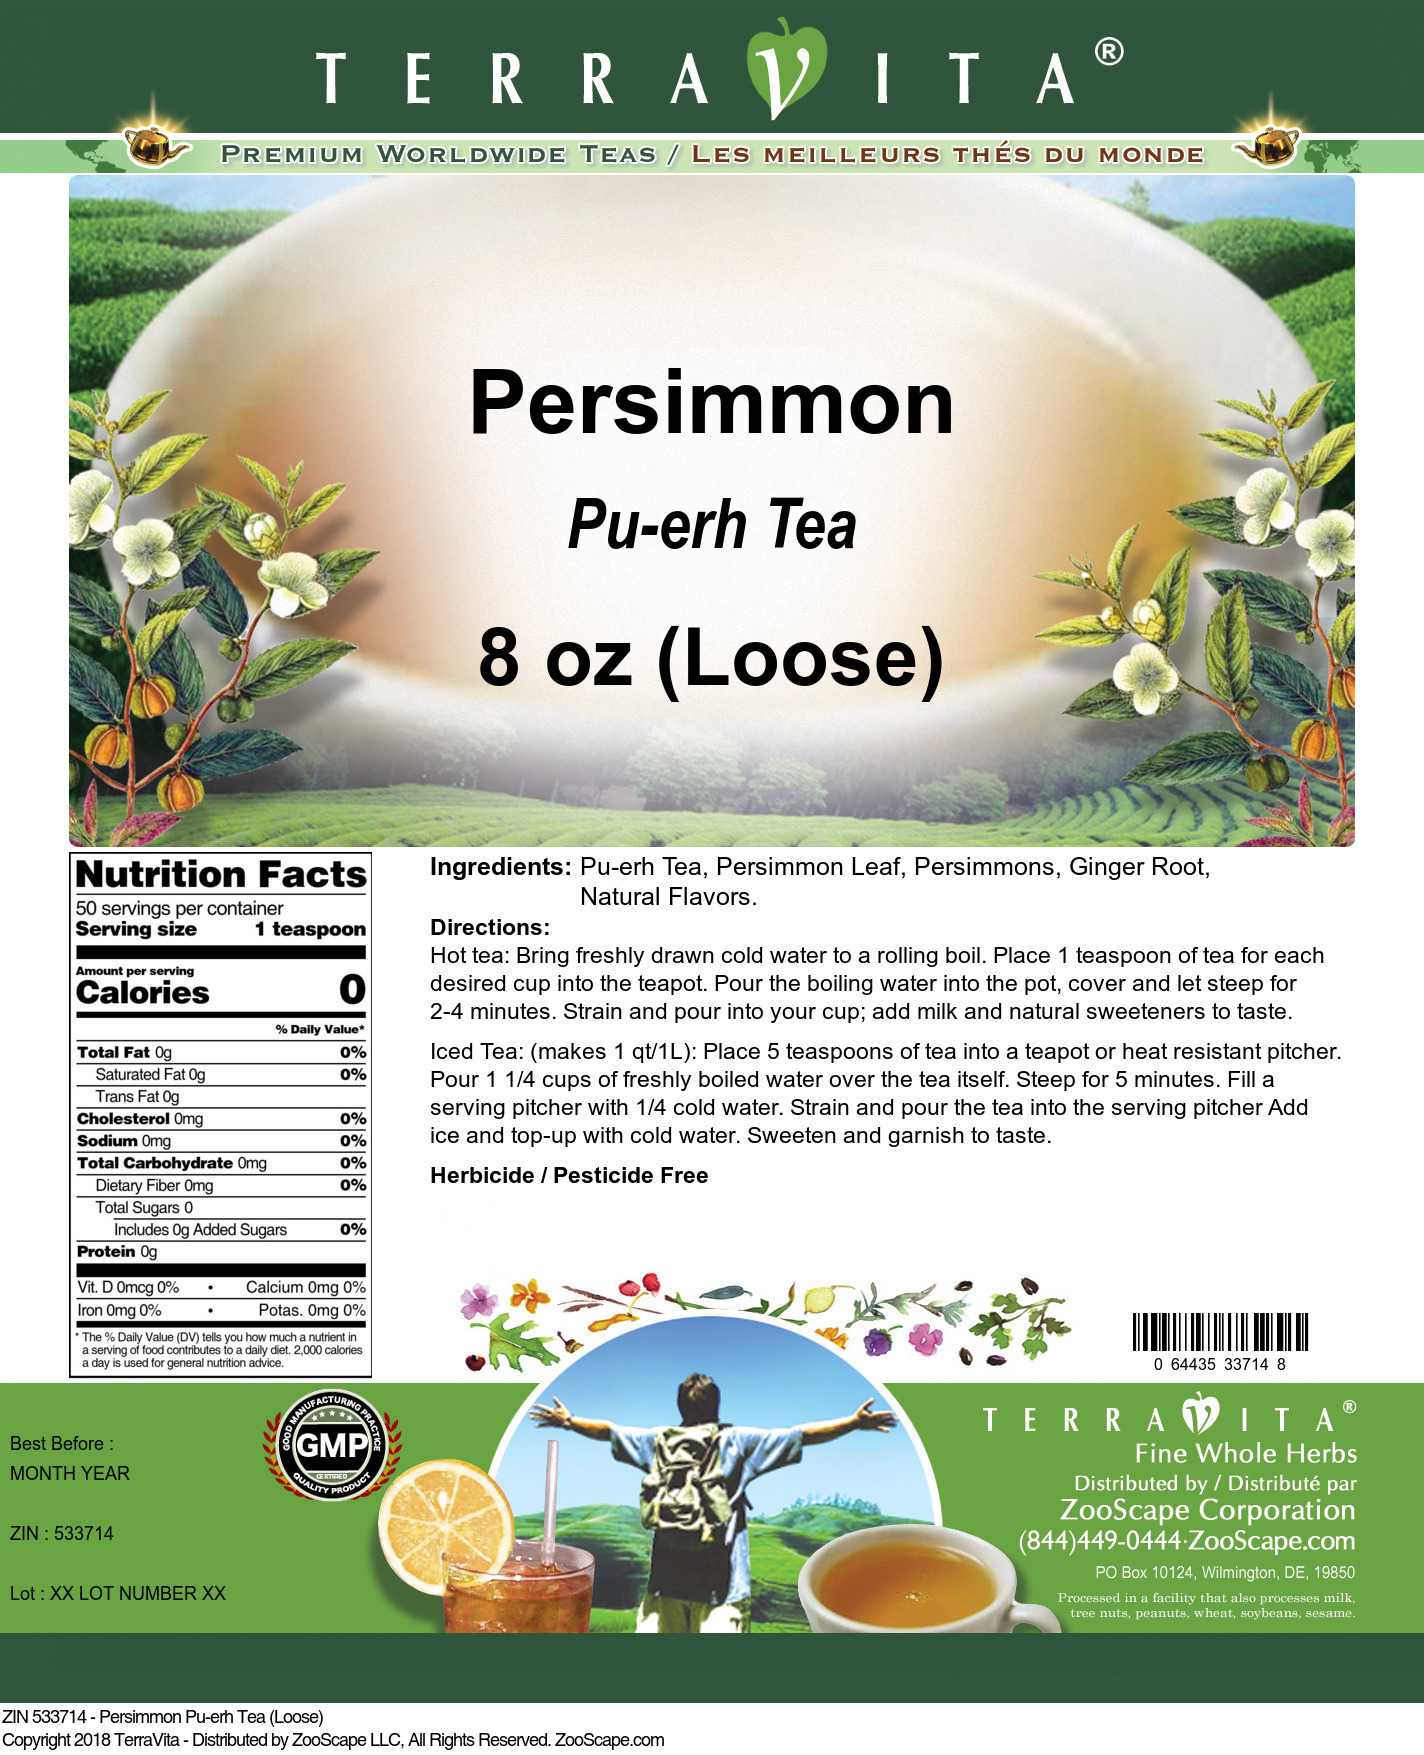 Persimmon Pu-erh Tea (Loose) - Label